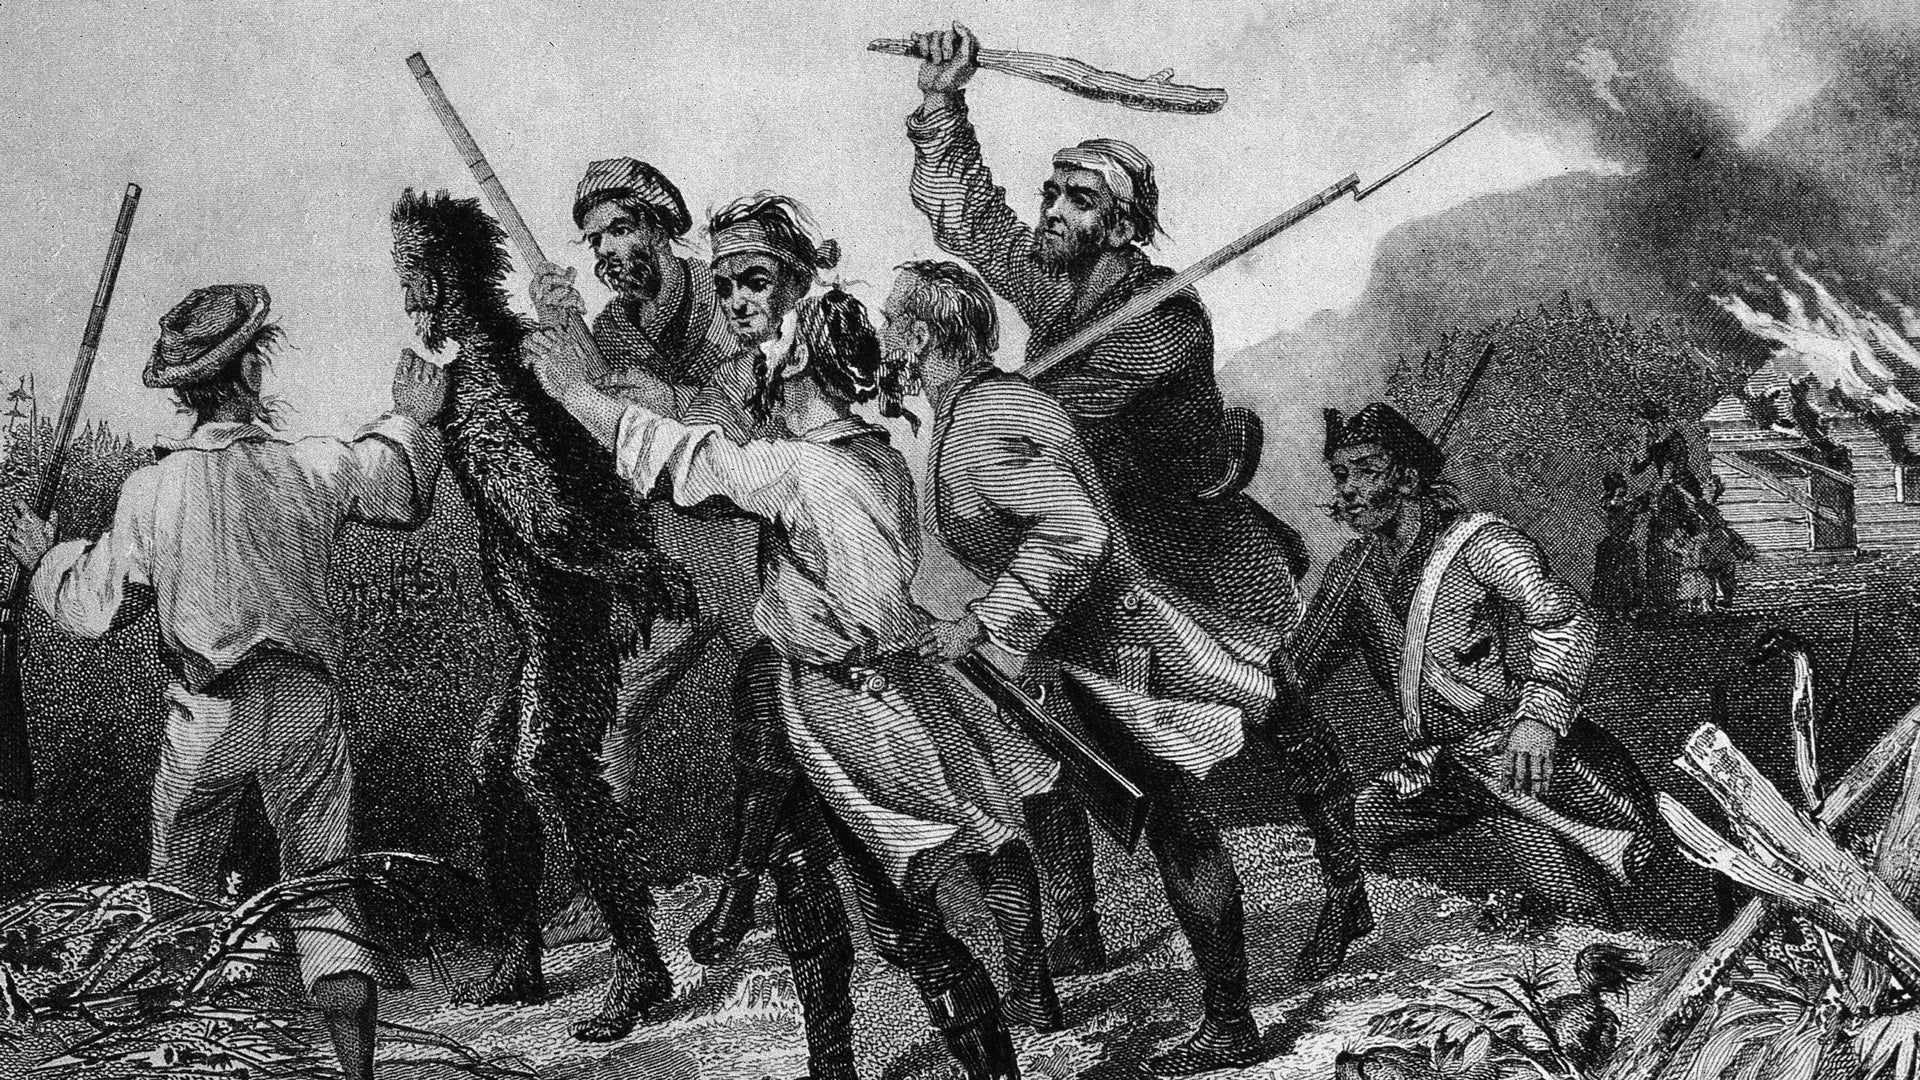 La rebelión del whisky de 1794: el primer impuesto gubernamental a una nueva nación